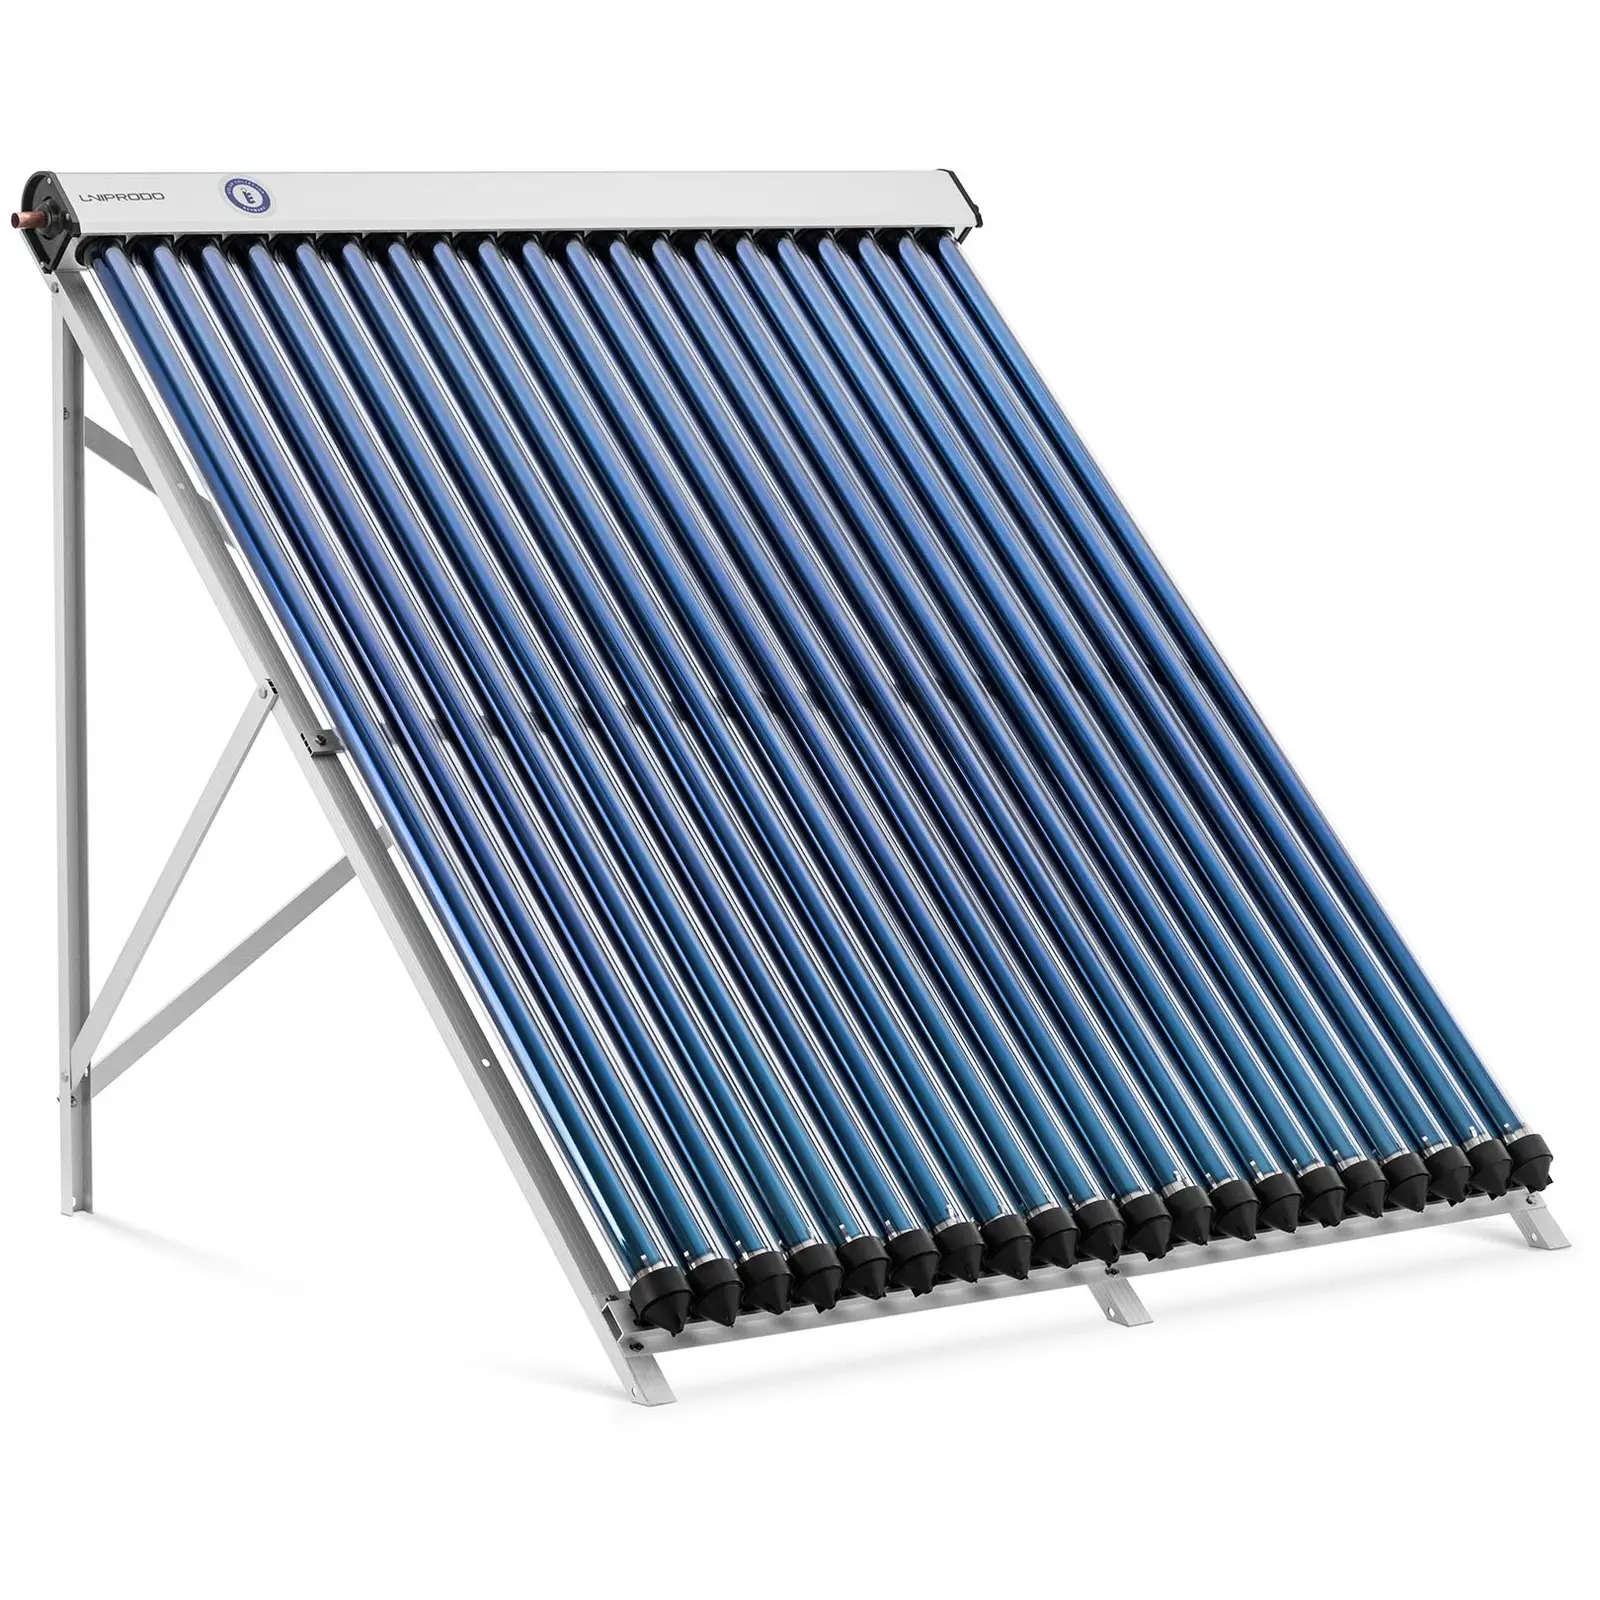 Pannello solare termico - 20 tubi - 160 - 200 L - 1.6 m² - -45 - 90 °C